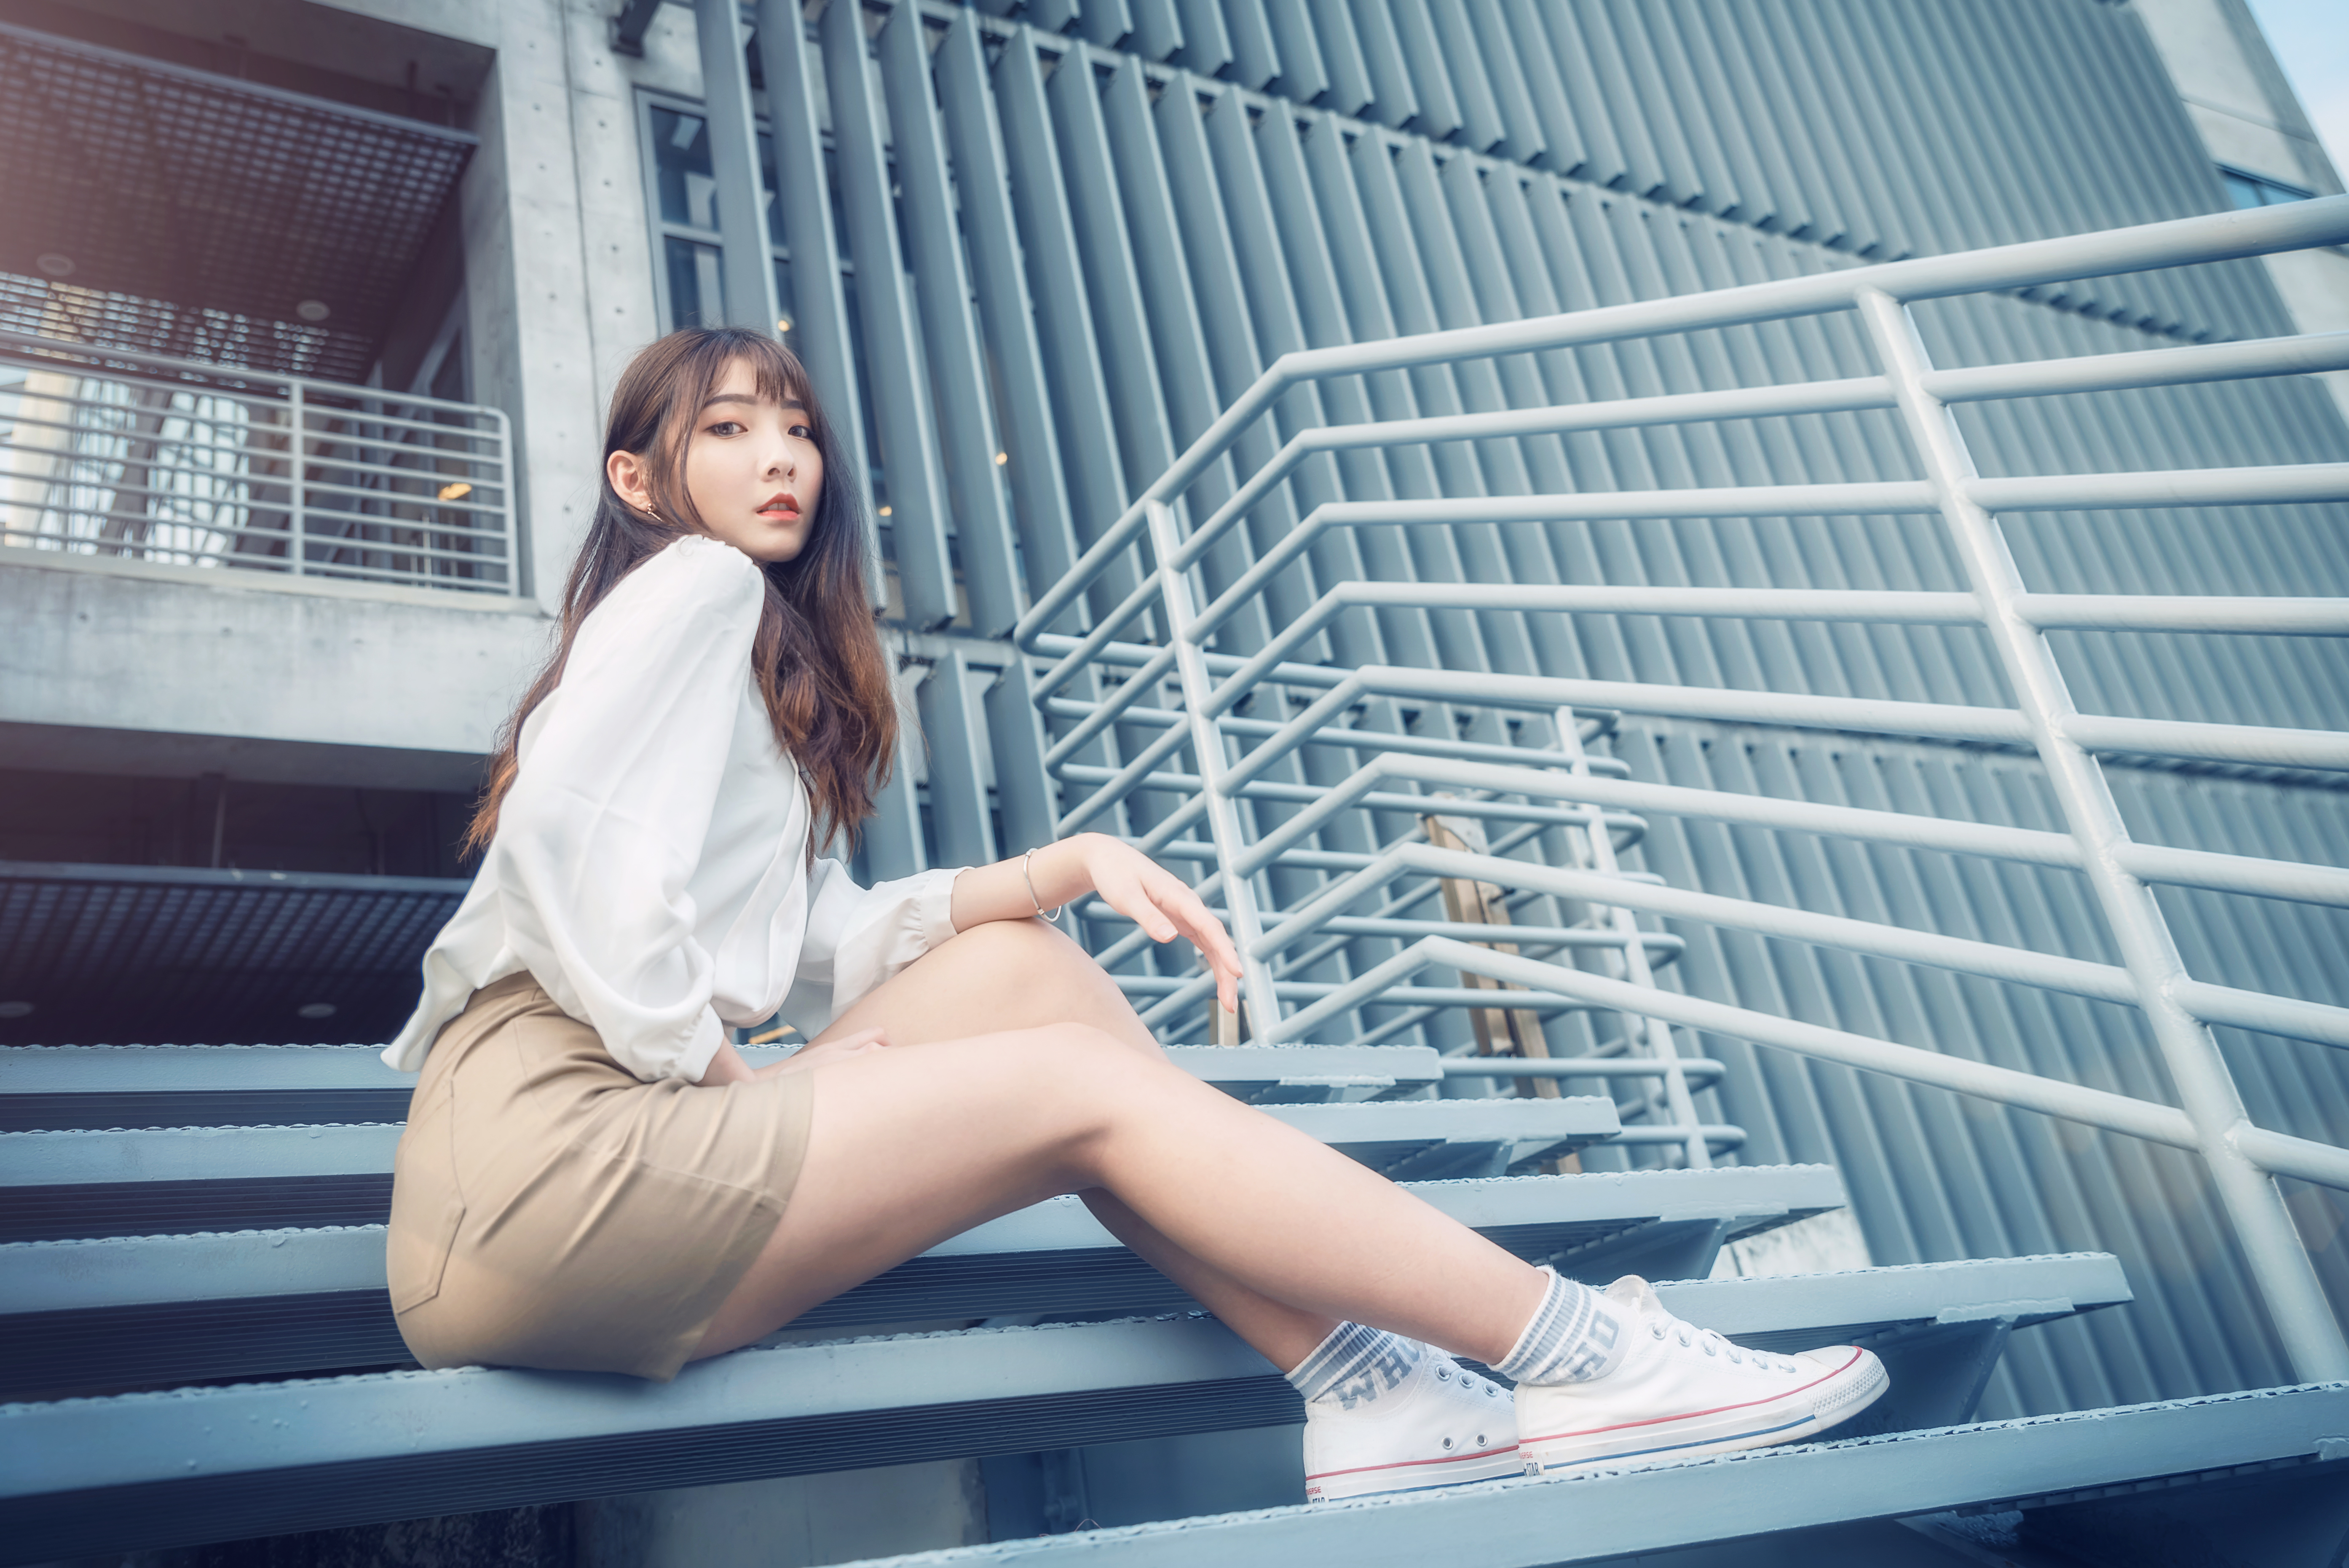 Asian Women Model Long Hair Brunette Sitting Sneakers Stairs Skirt Blouse Short Socks Railing 5575x3722